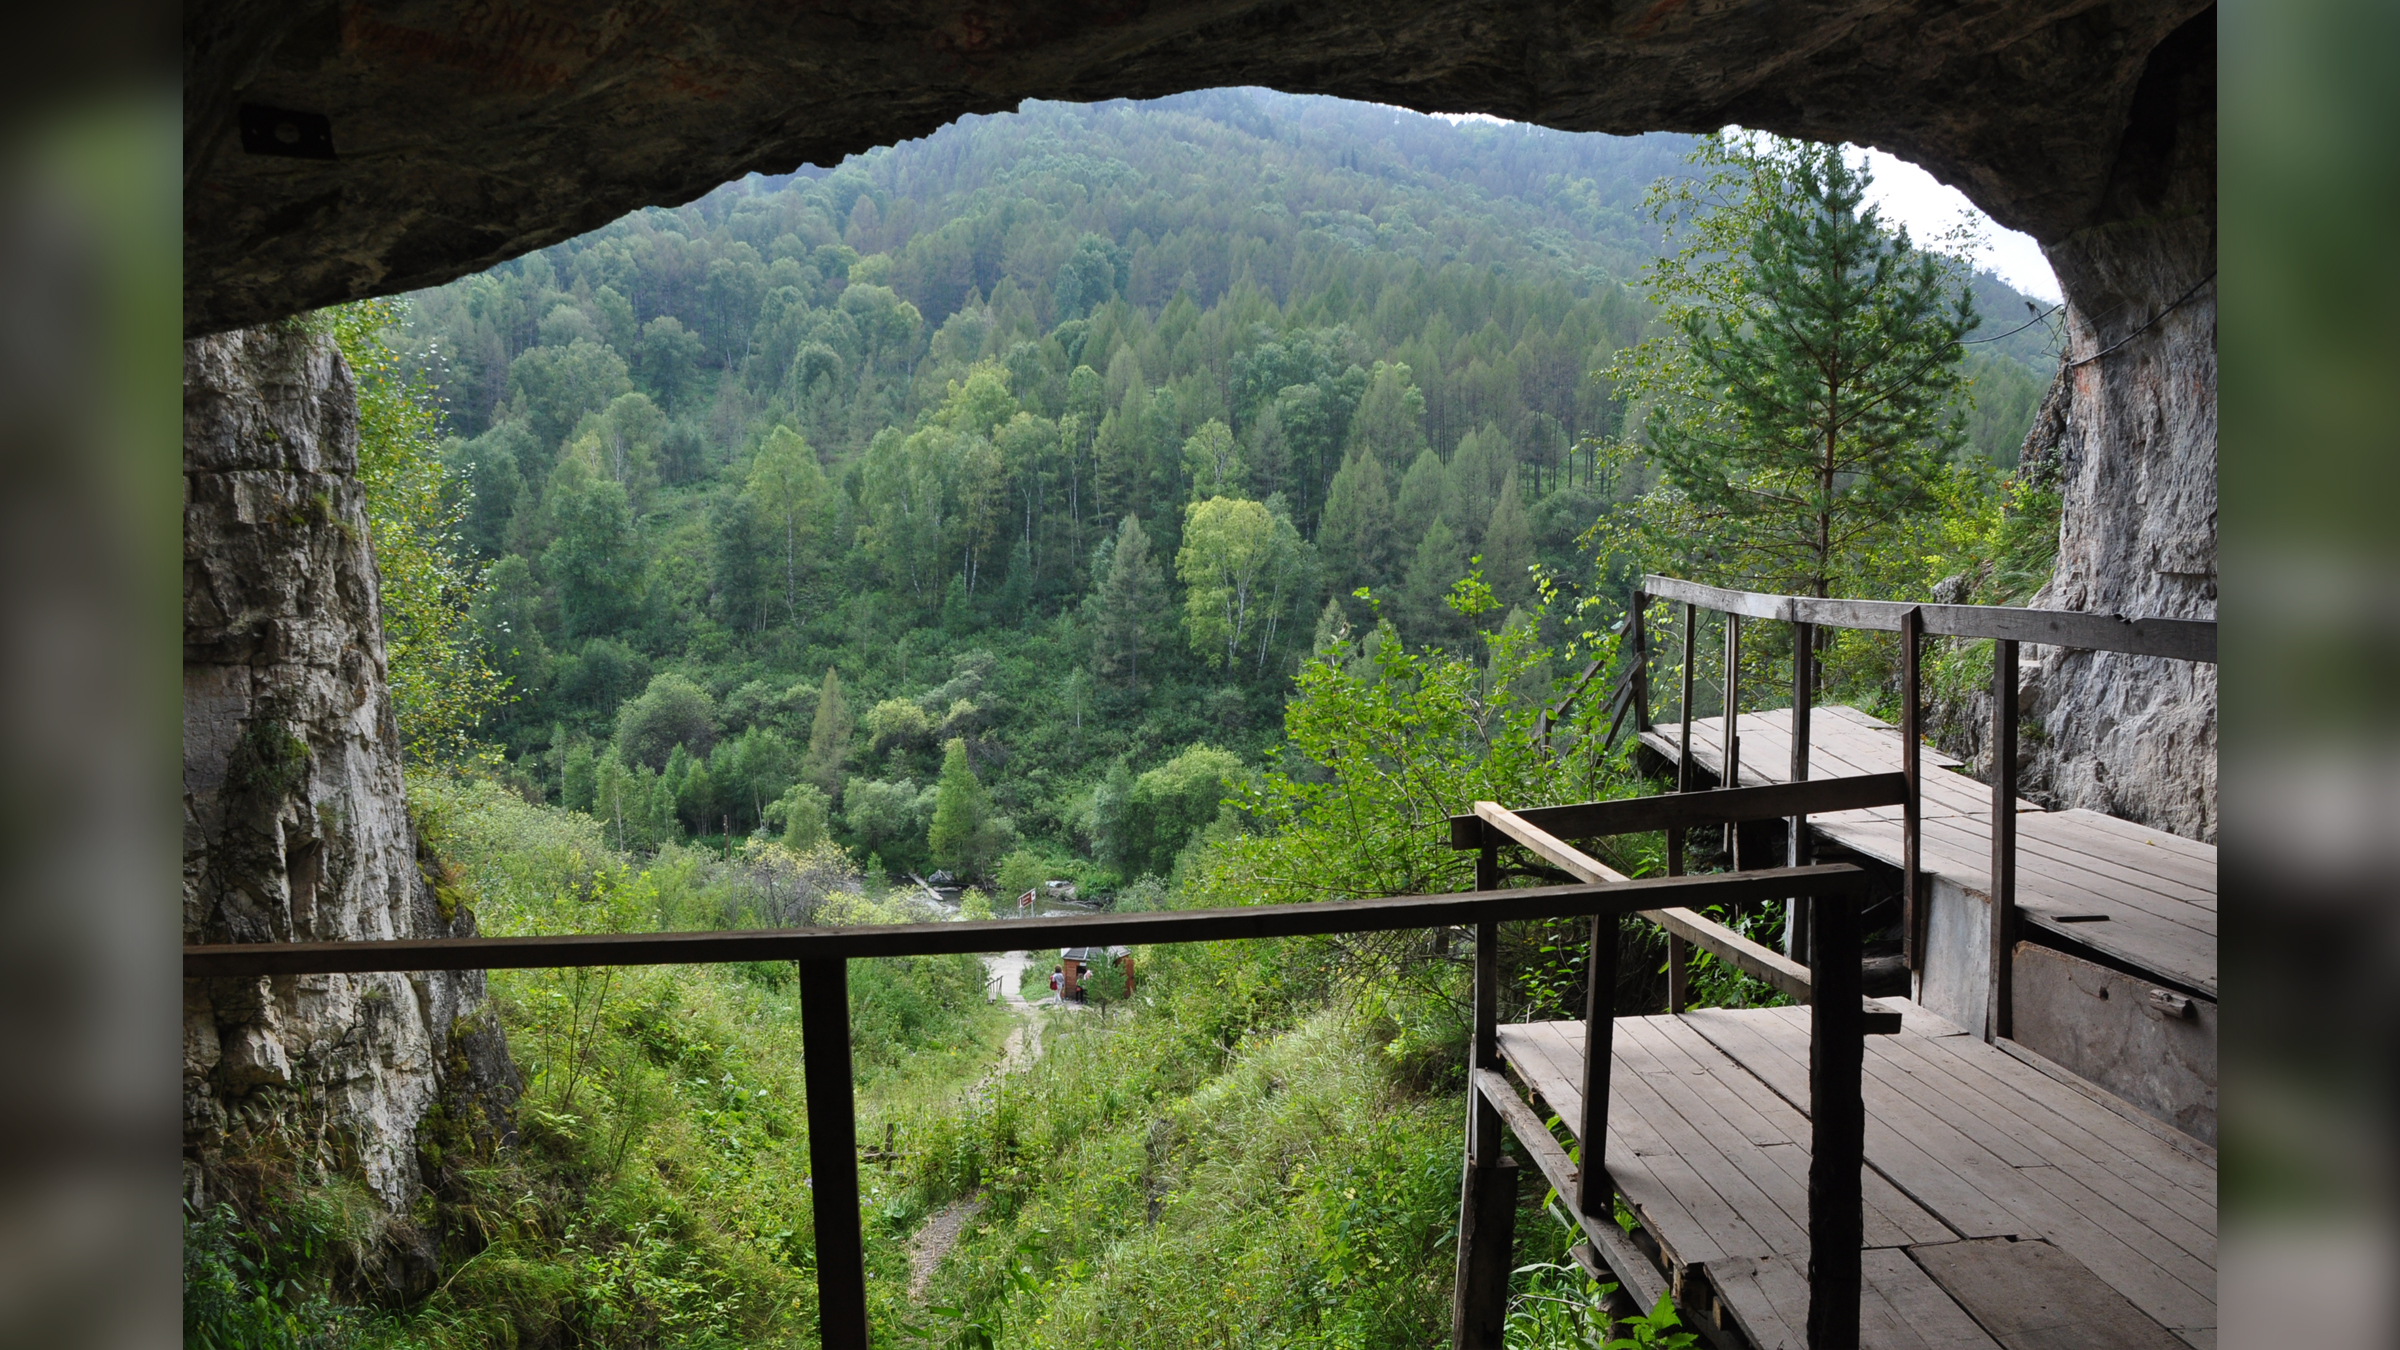 Une vue de l'intérieur de la grotte de Denisova dans les montagnes de l'Altaï en Russie.  Remarquez à quel point la végétation et le climat sont différents ici par rapport au Laos.